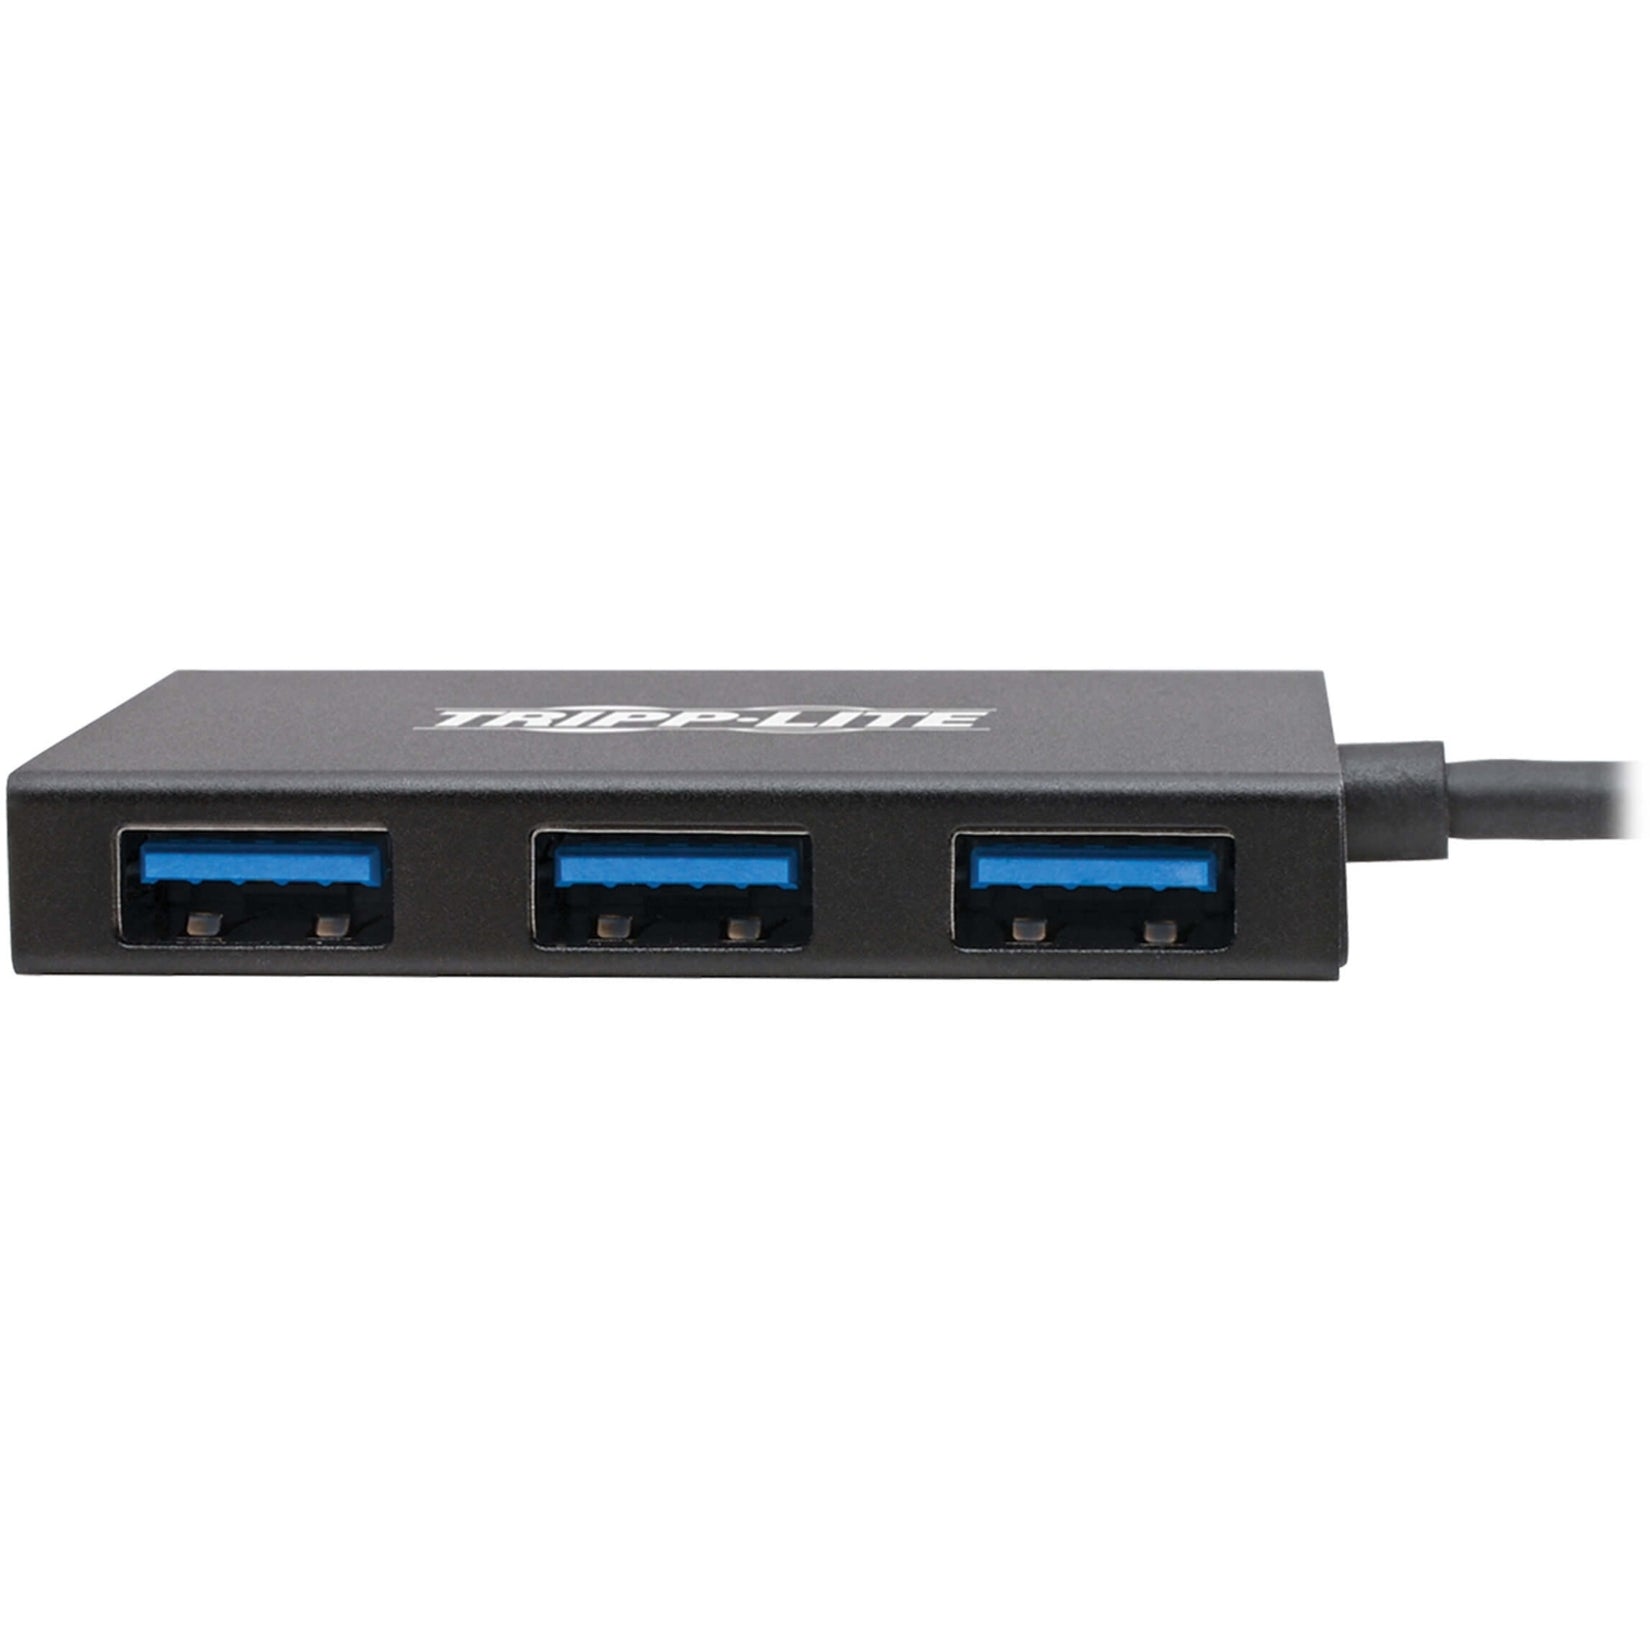 Tripp Lite U460-004-4A-G2 USB 3.1 C Hub, 10 Gbps, Aluminum Housing, 4 USB Ports